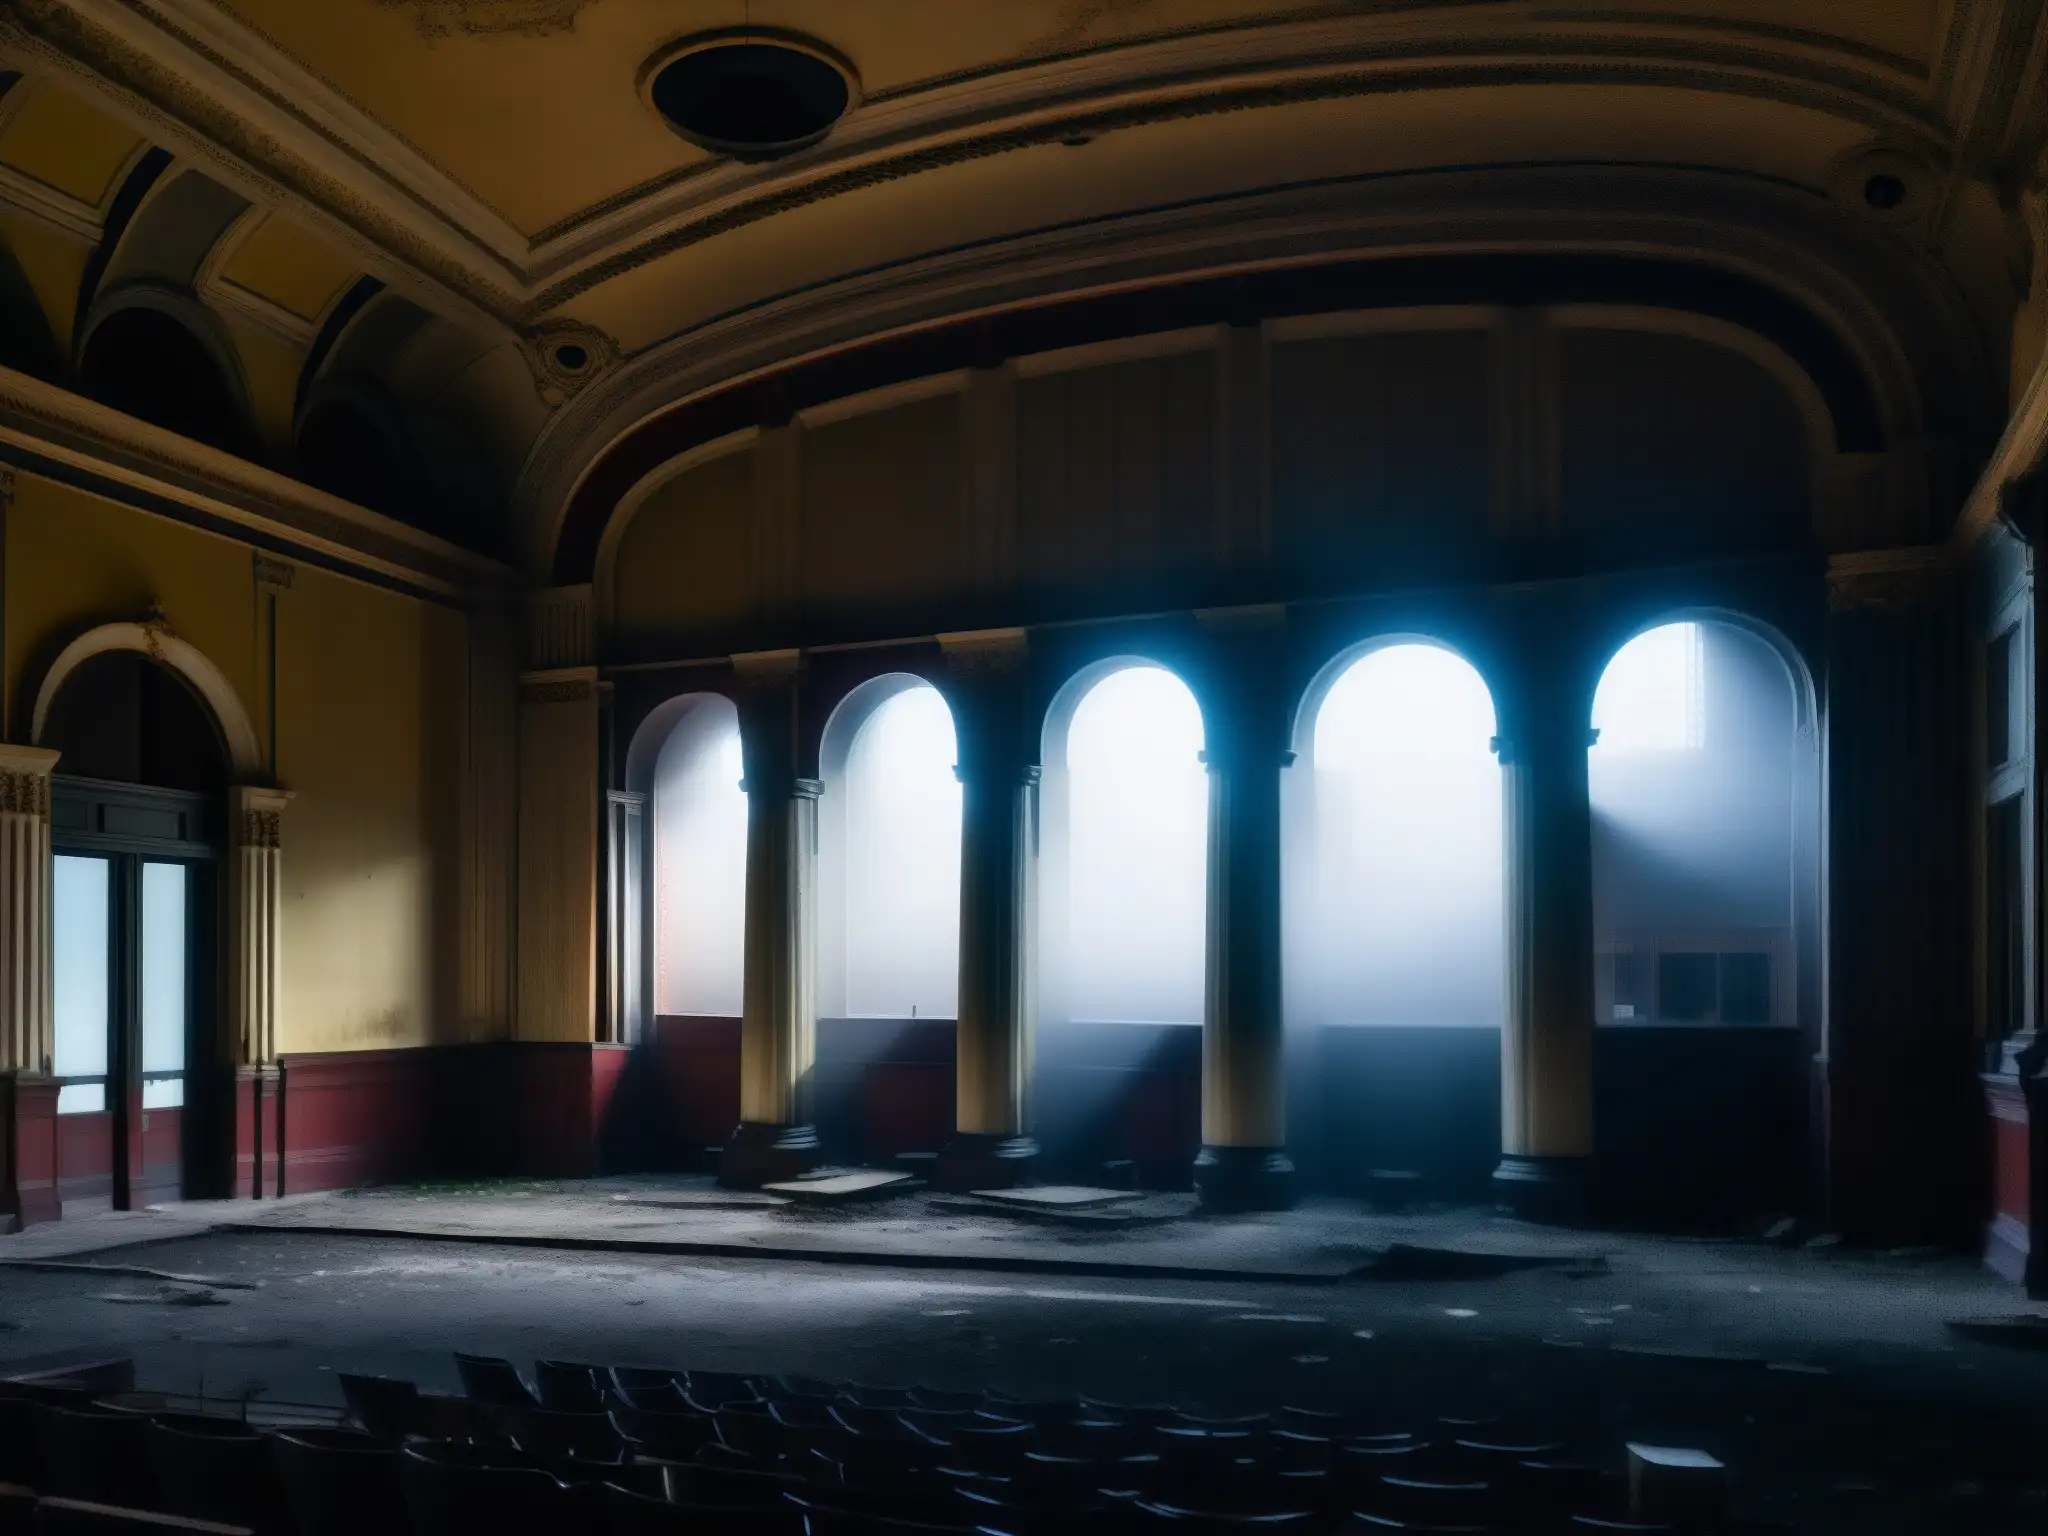 El misterioso y decadente Fantasma de la Ópera de Detroit, envuelto en niebla con la luna de fondo, evoca un aura de intriga y misterio